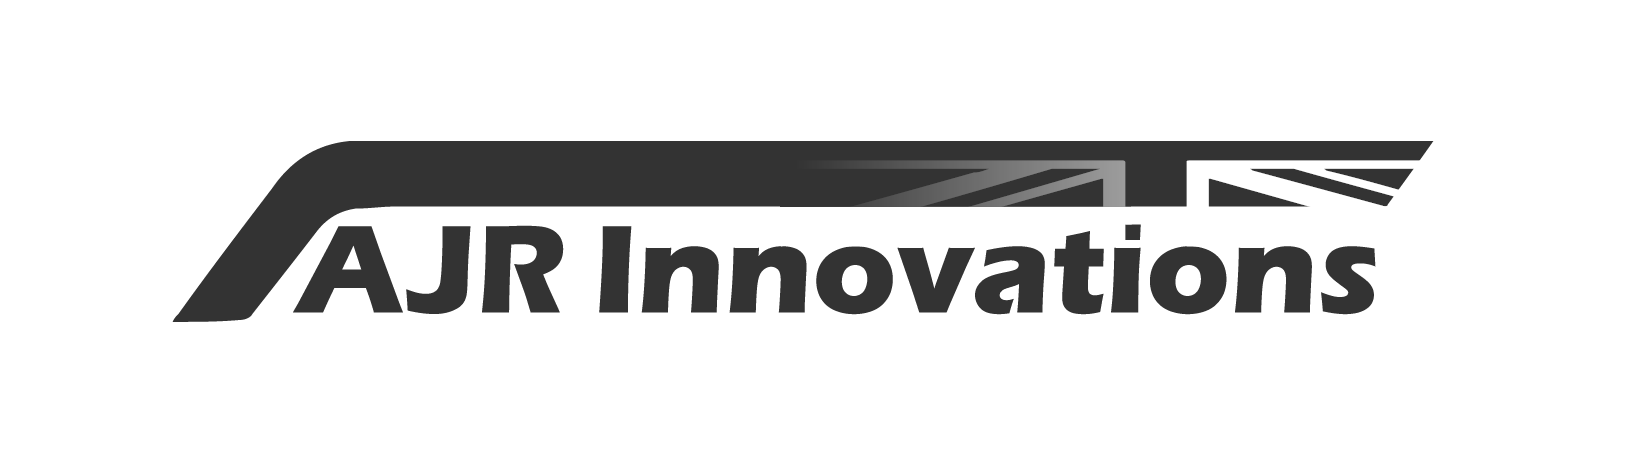 AJR Innovations Logo